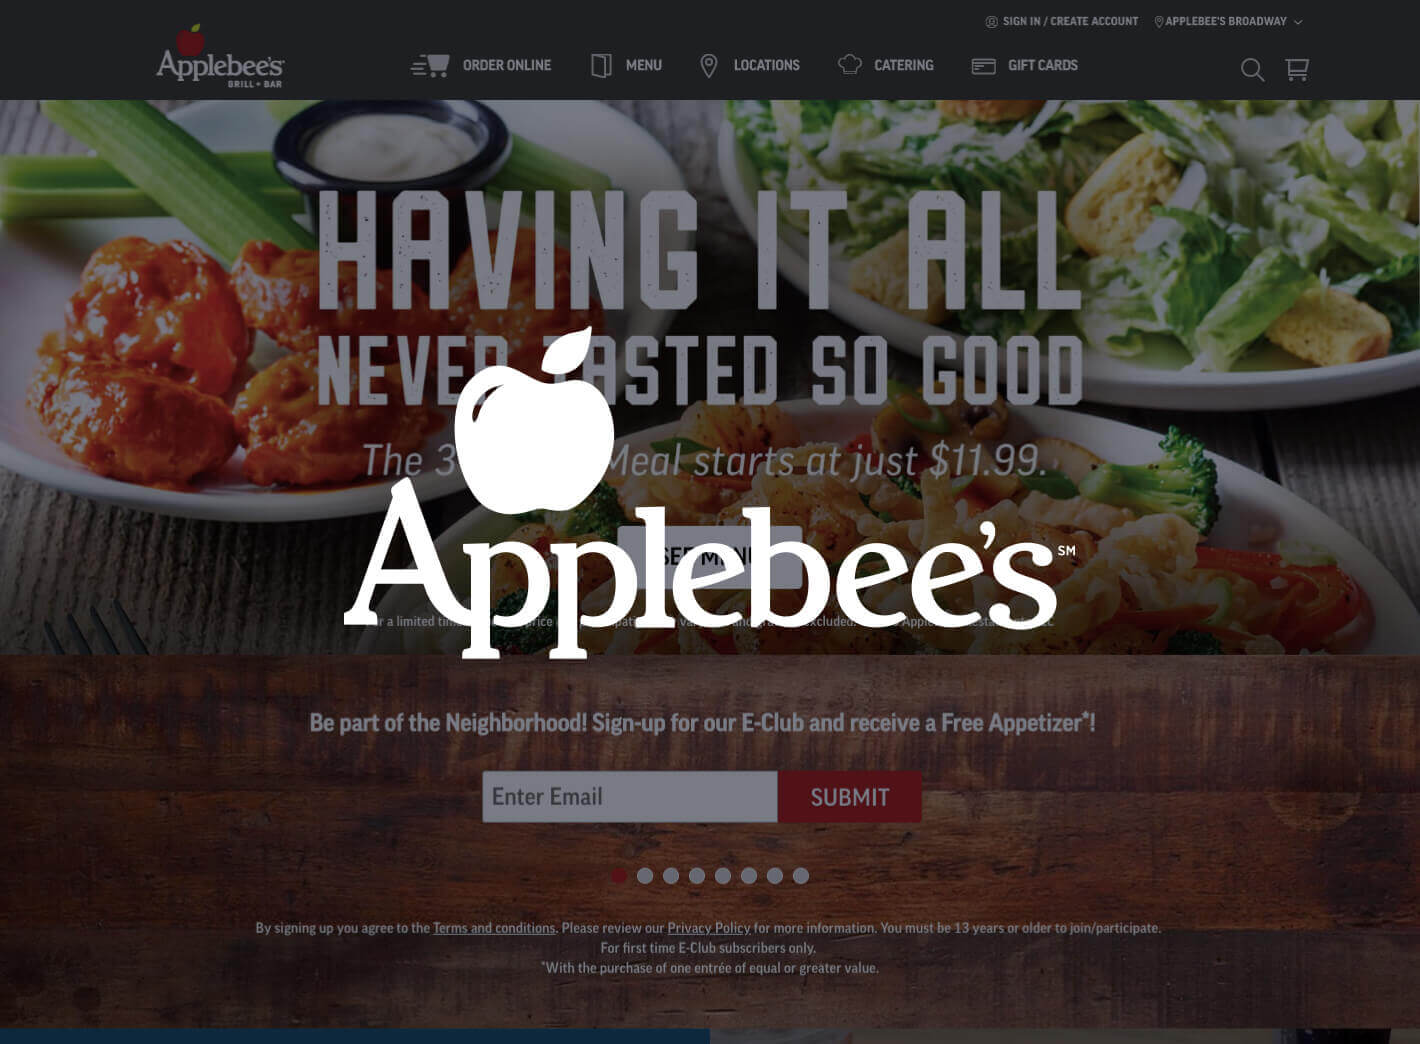 White Applebee's logo and website